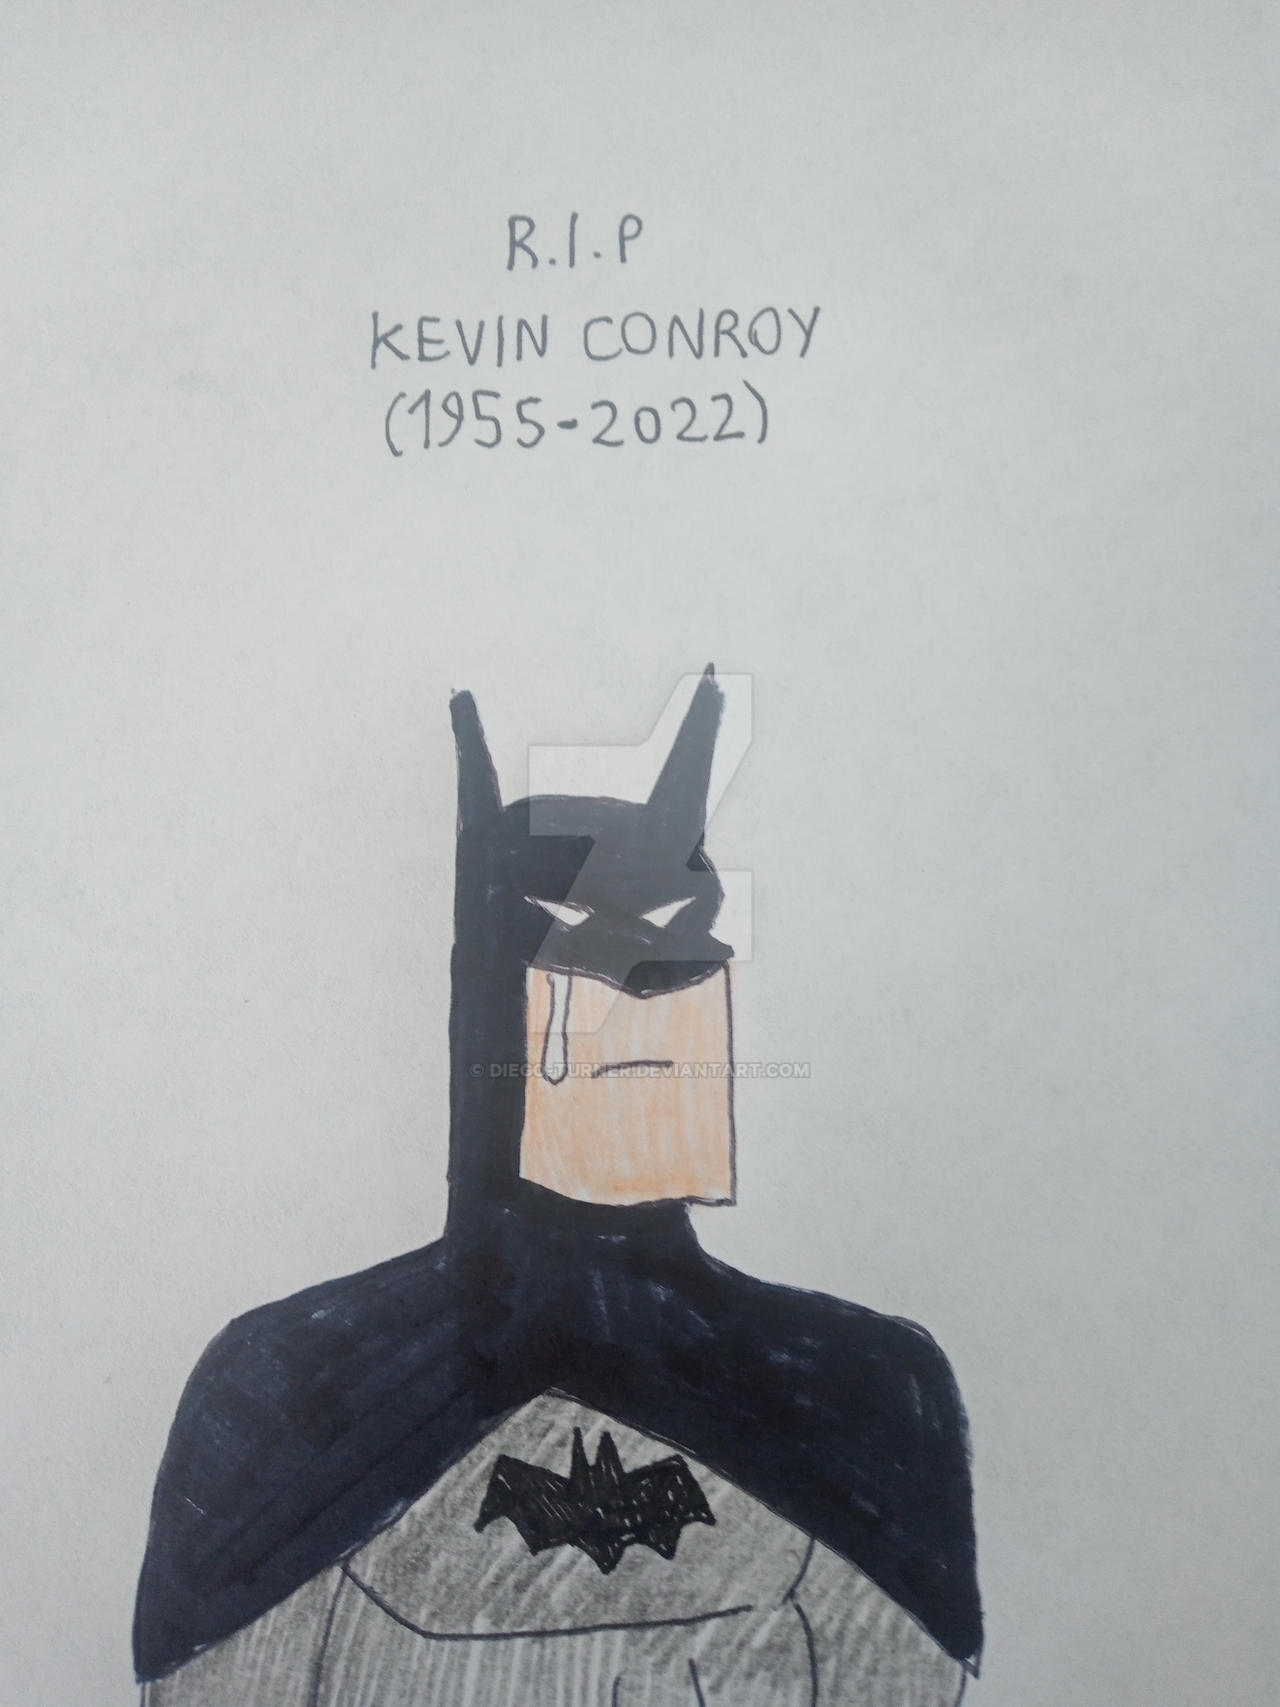 KEVIN CONROY: A VOZ DO BATMAN